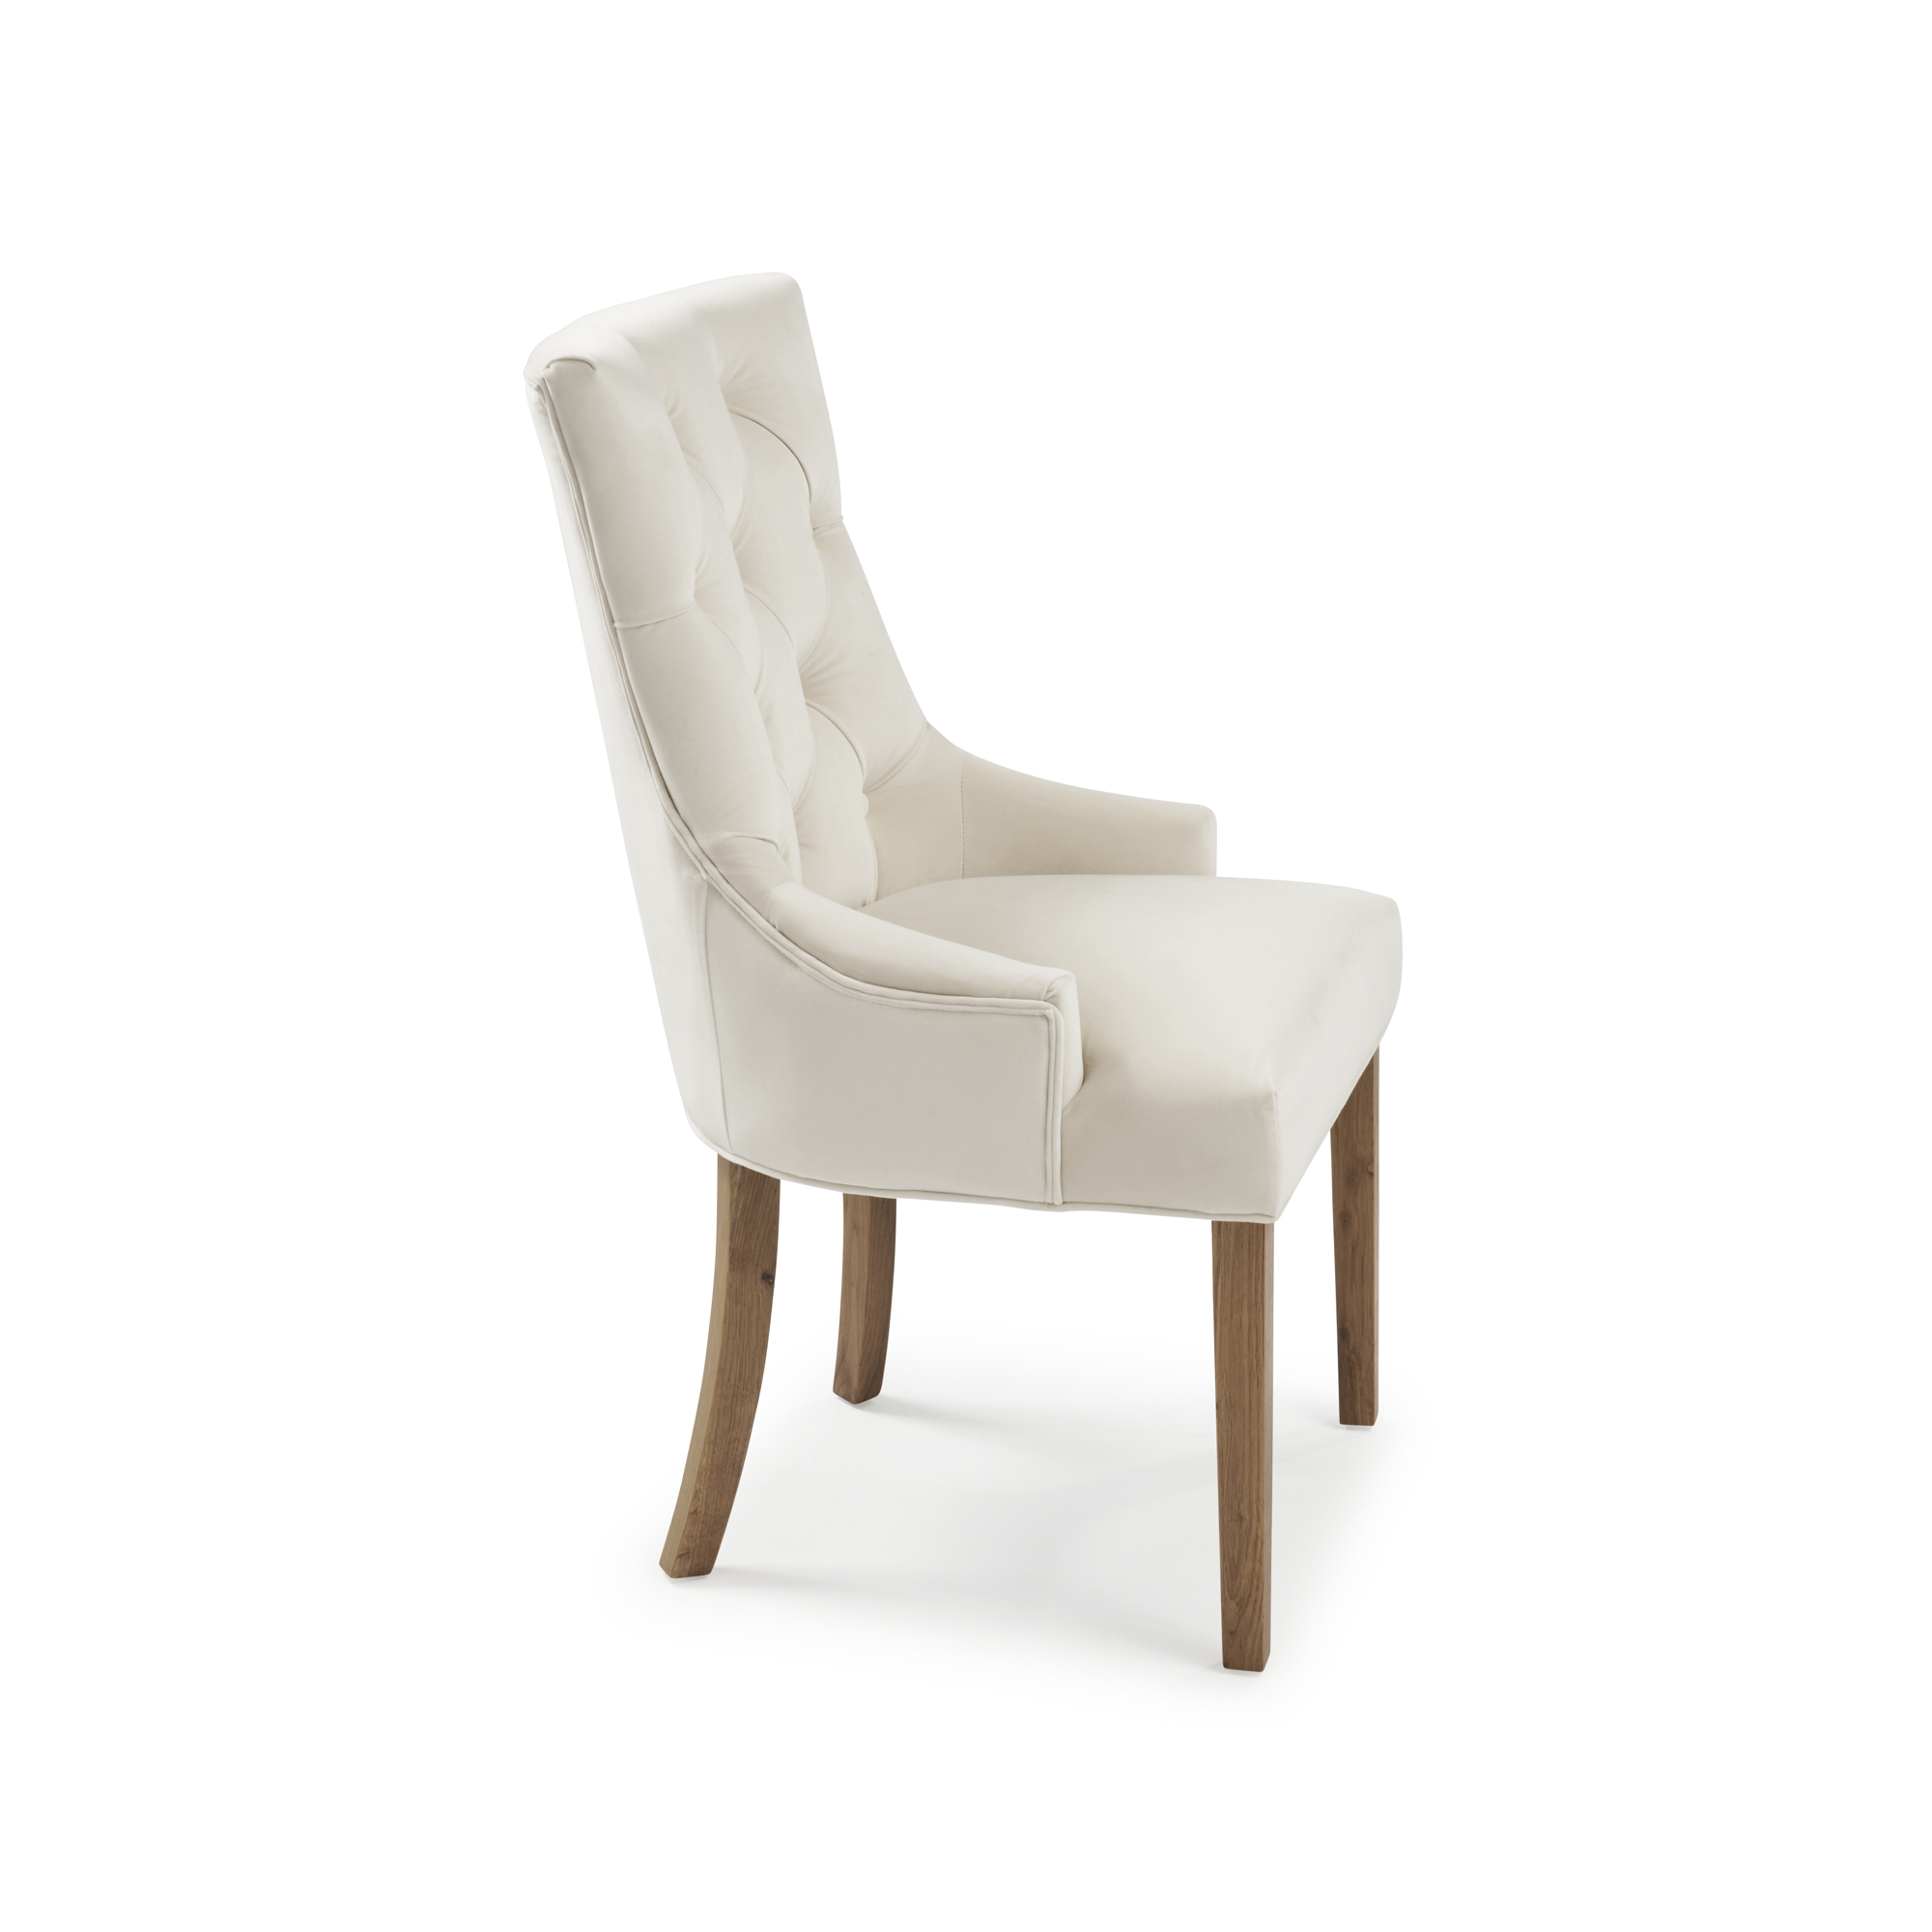 Truro Tiffany Cream Velvet Upholstered Scoop Dining Chair – Oak Legs